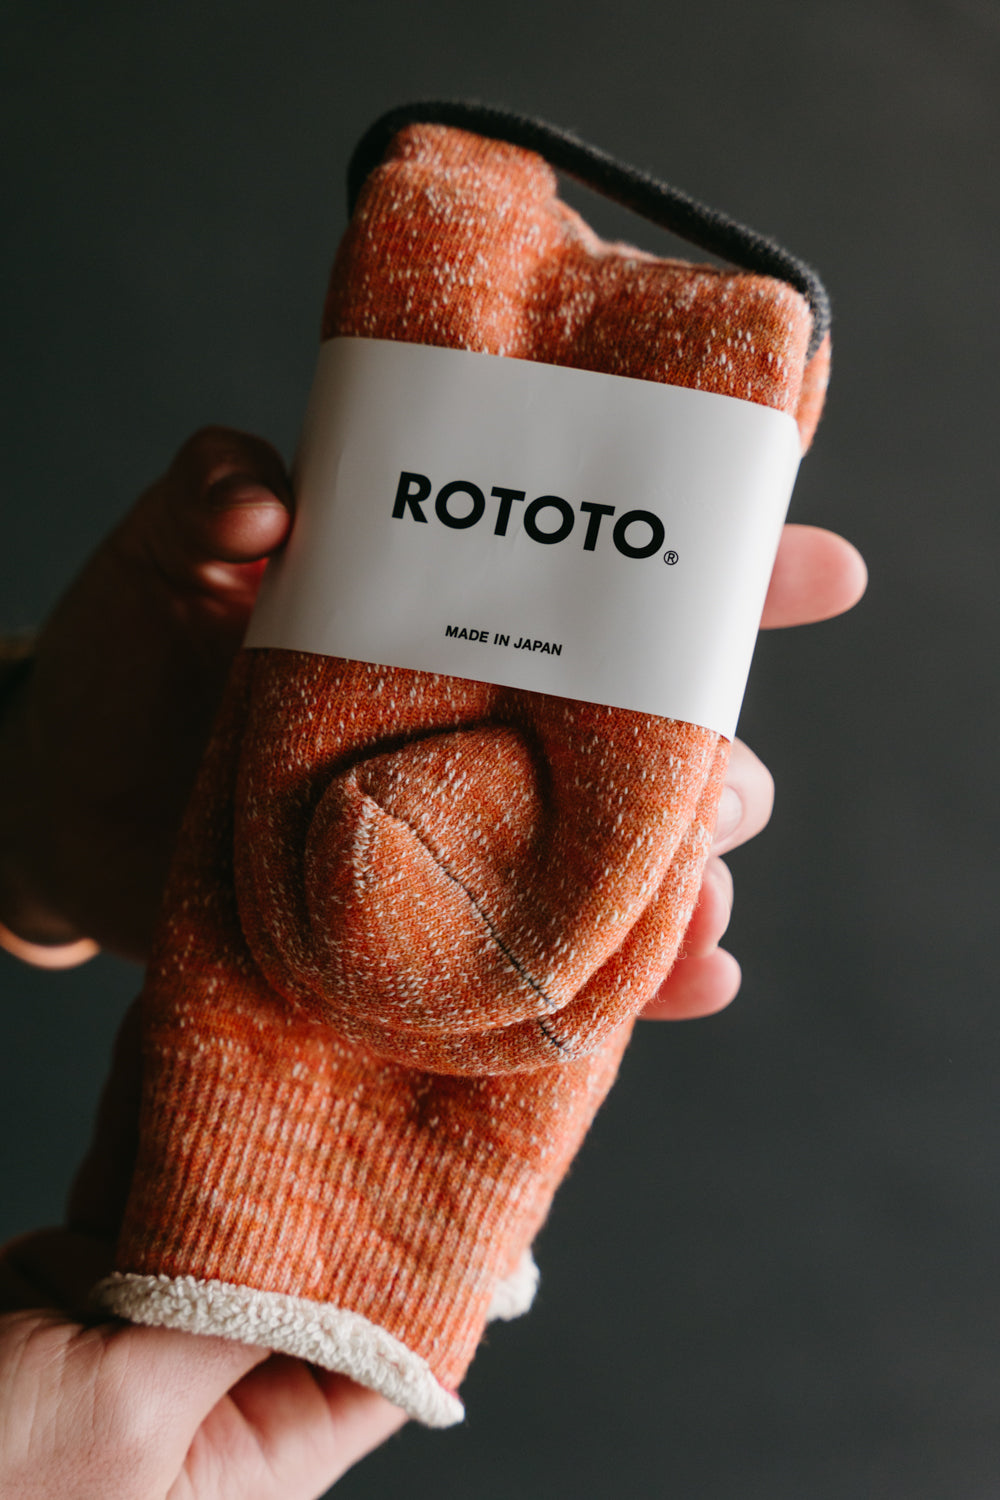 R1001 - Double Face Crew Socks Merino Wool OG - Orange